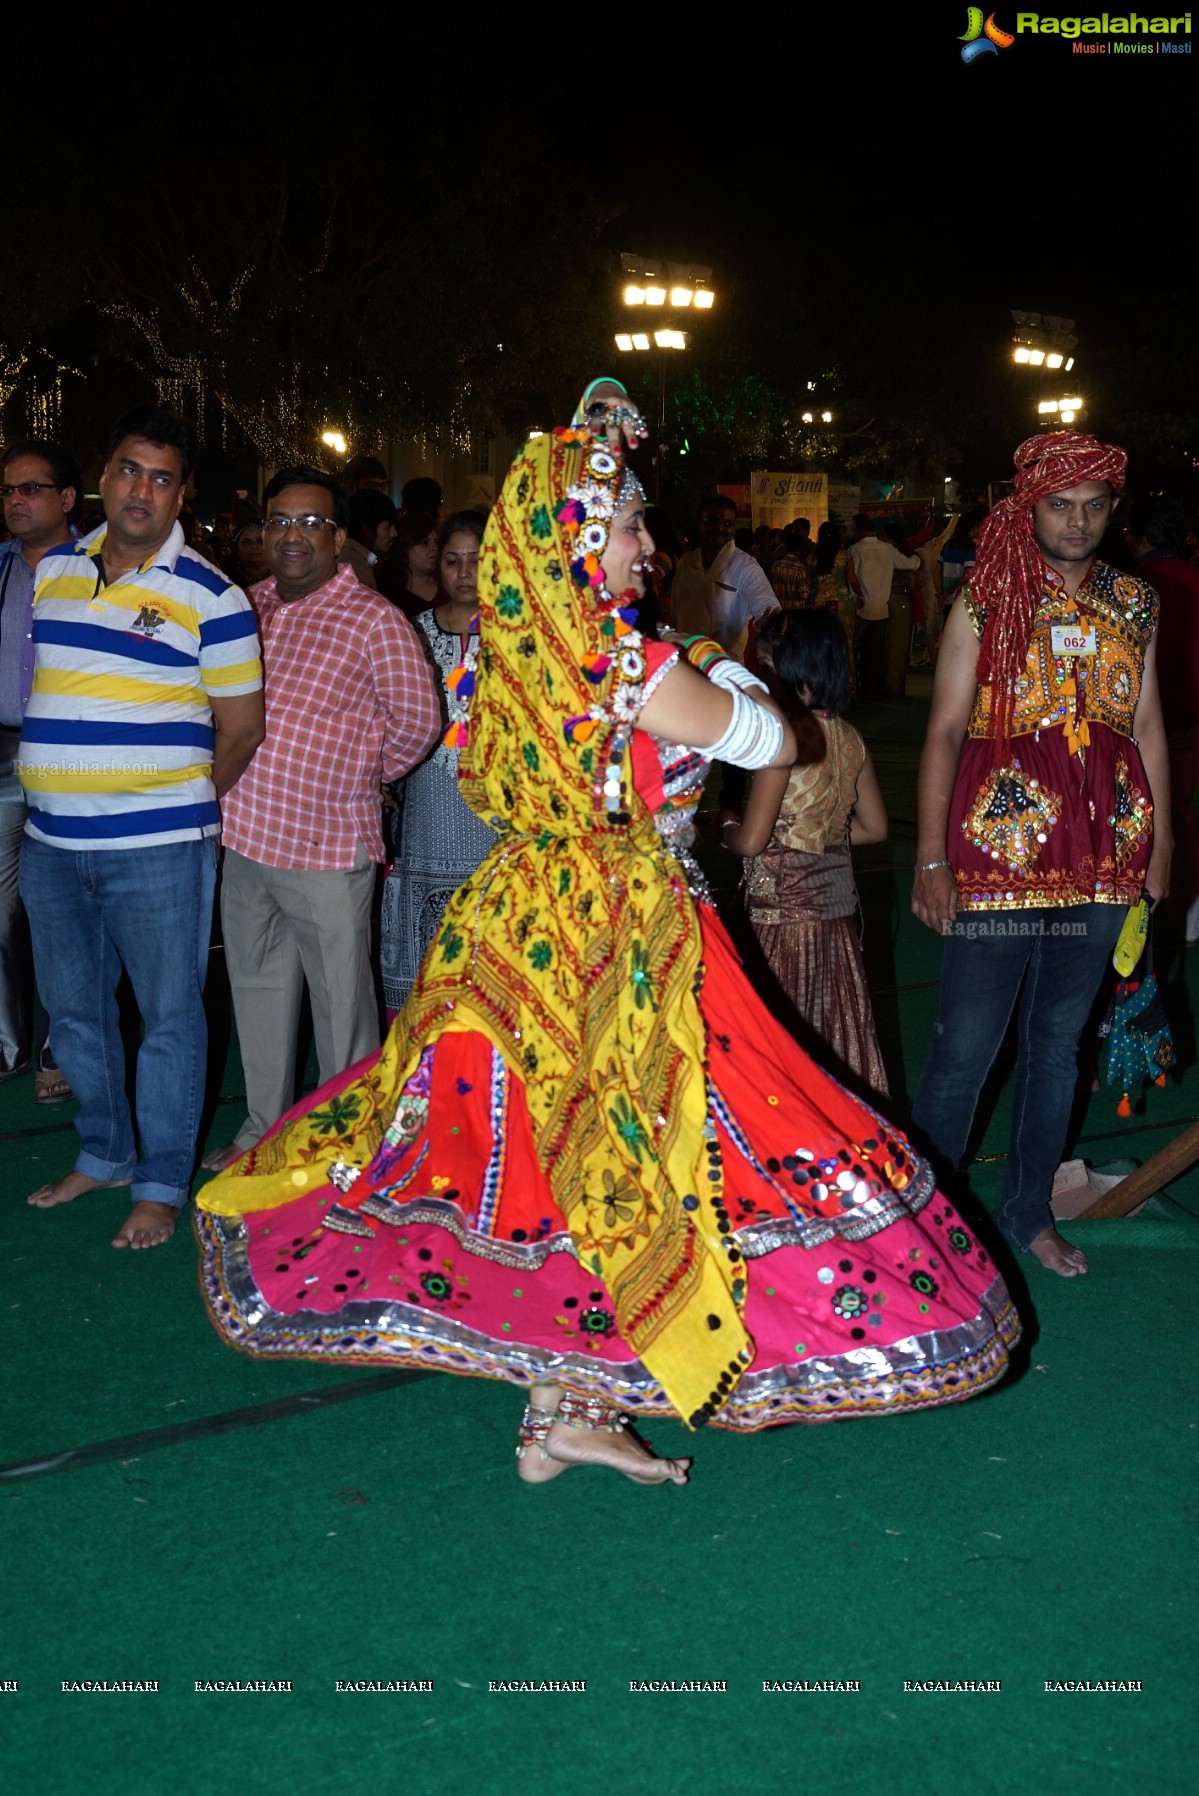 Legend Navratri Utsav 2015 (Day 4) at Imperial Gardens, Hyderabad